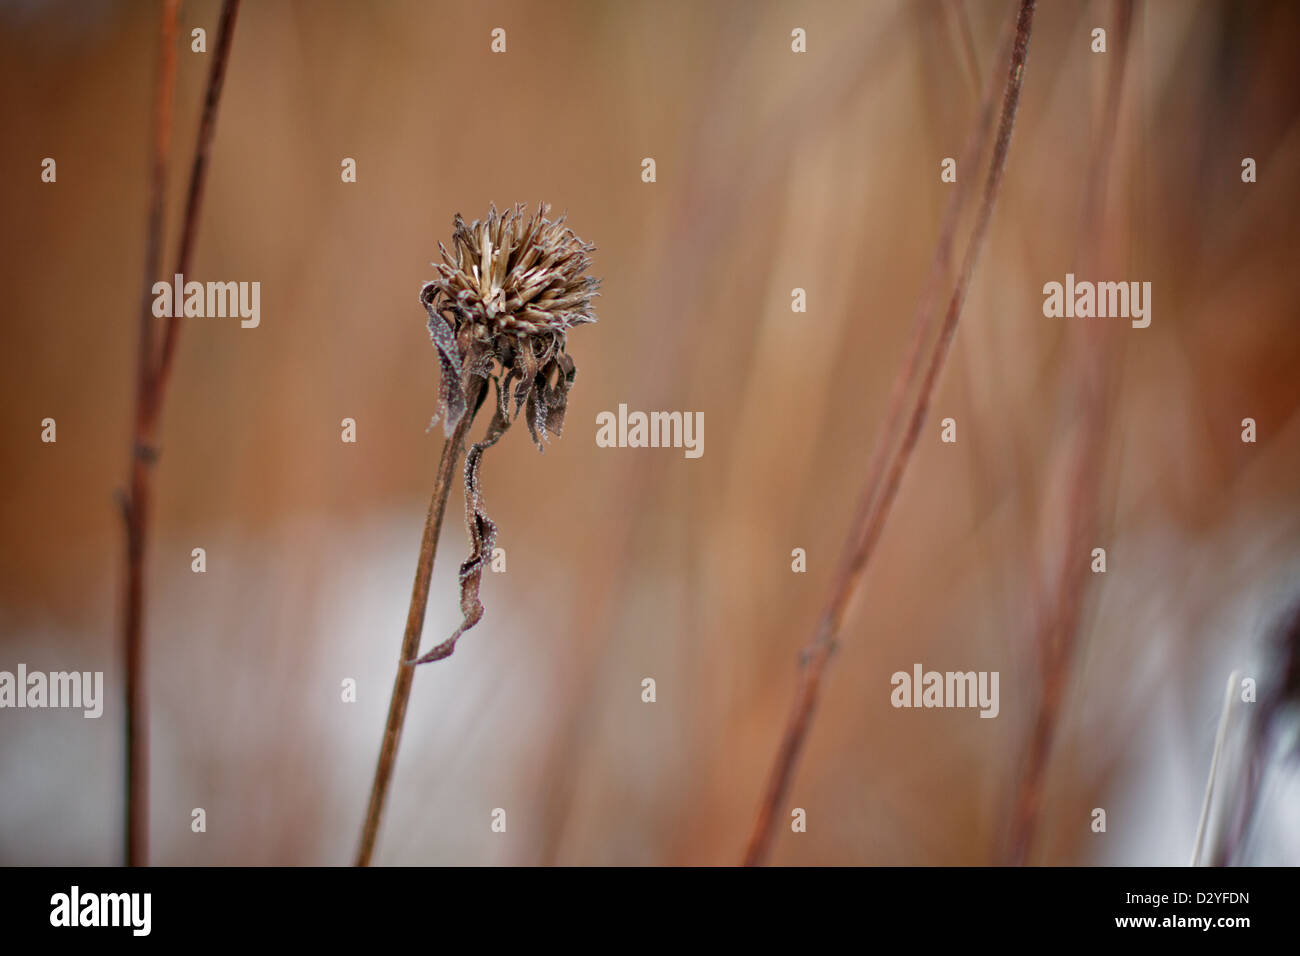 Teil einer Reihe von Aufnahmen mit Winter Flora am Ness Gärten, Wirral, Merseyside, England, UK Stockfoto